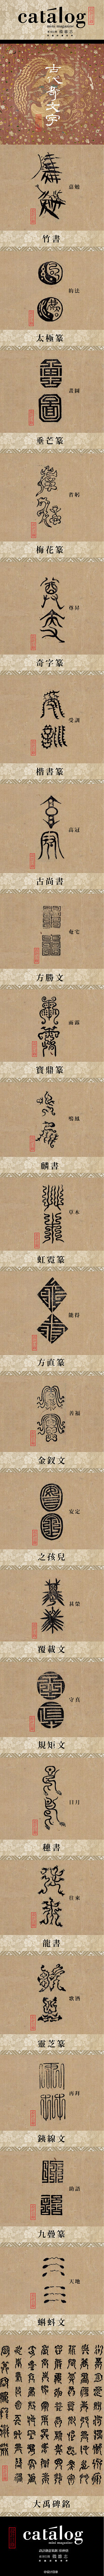 设计目录：古代奇文字 | 中國古代文字演...